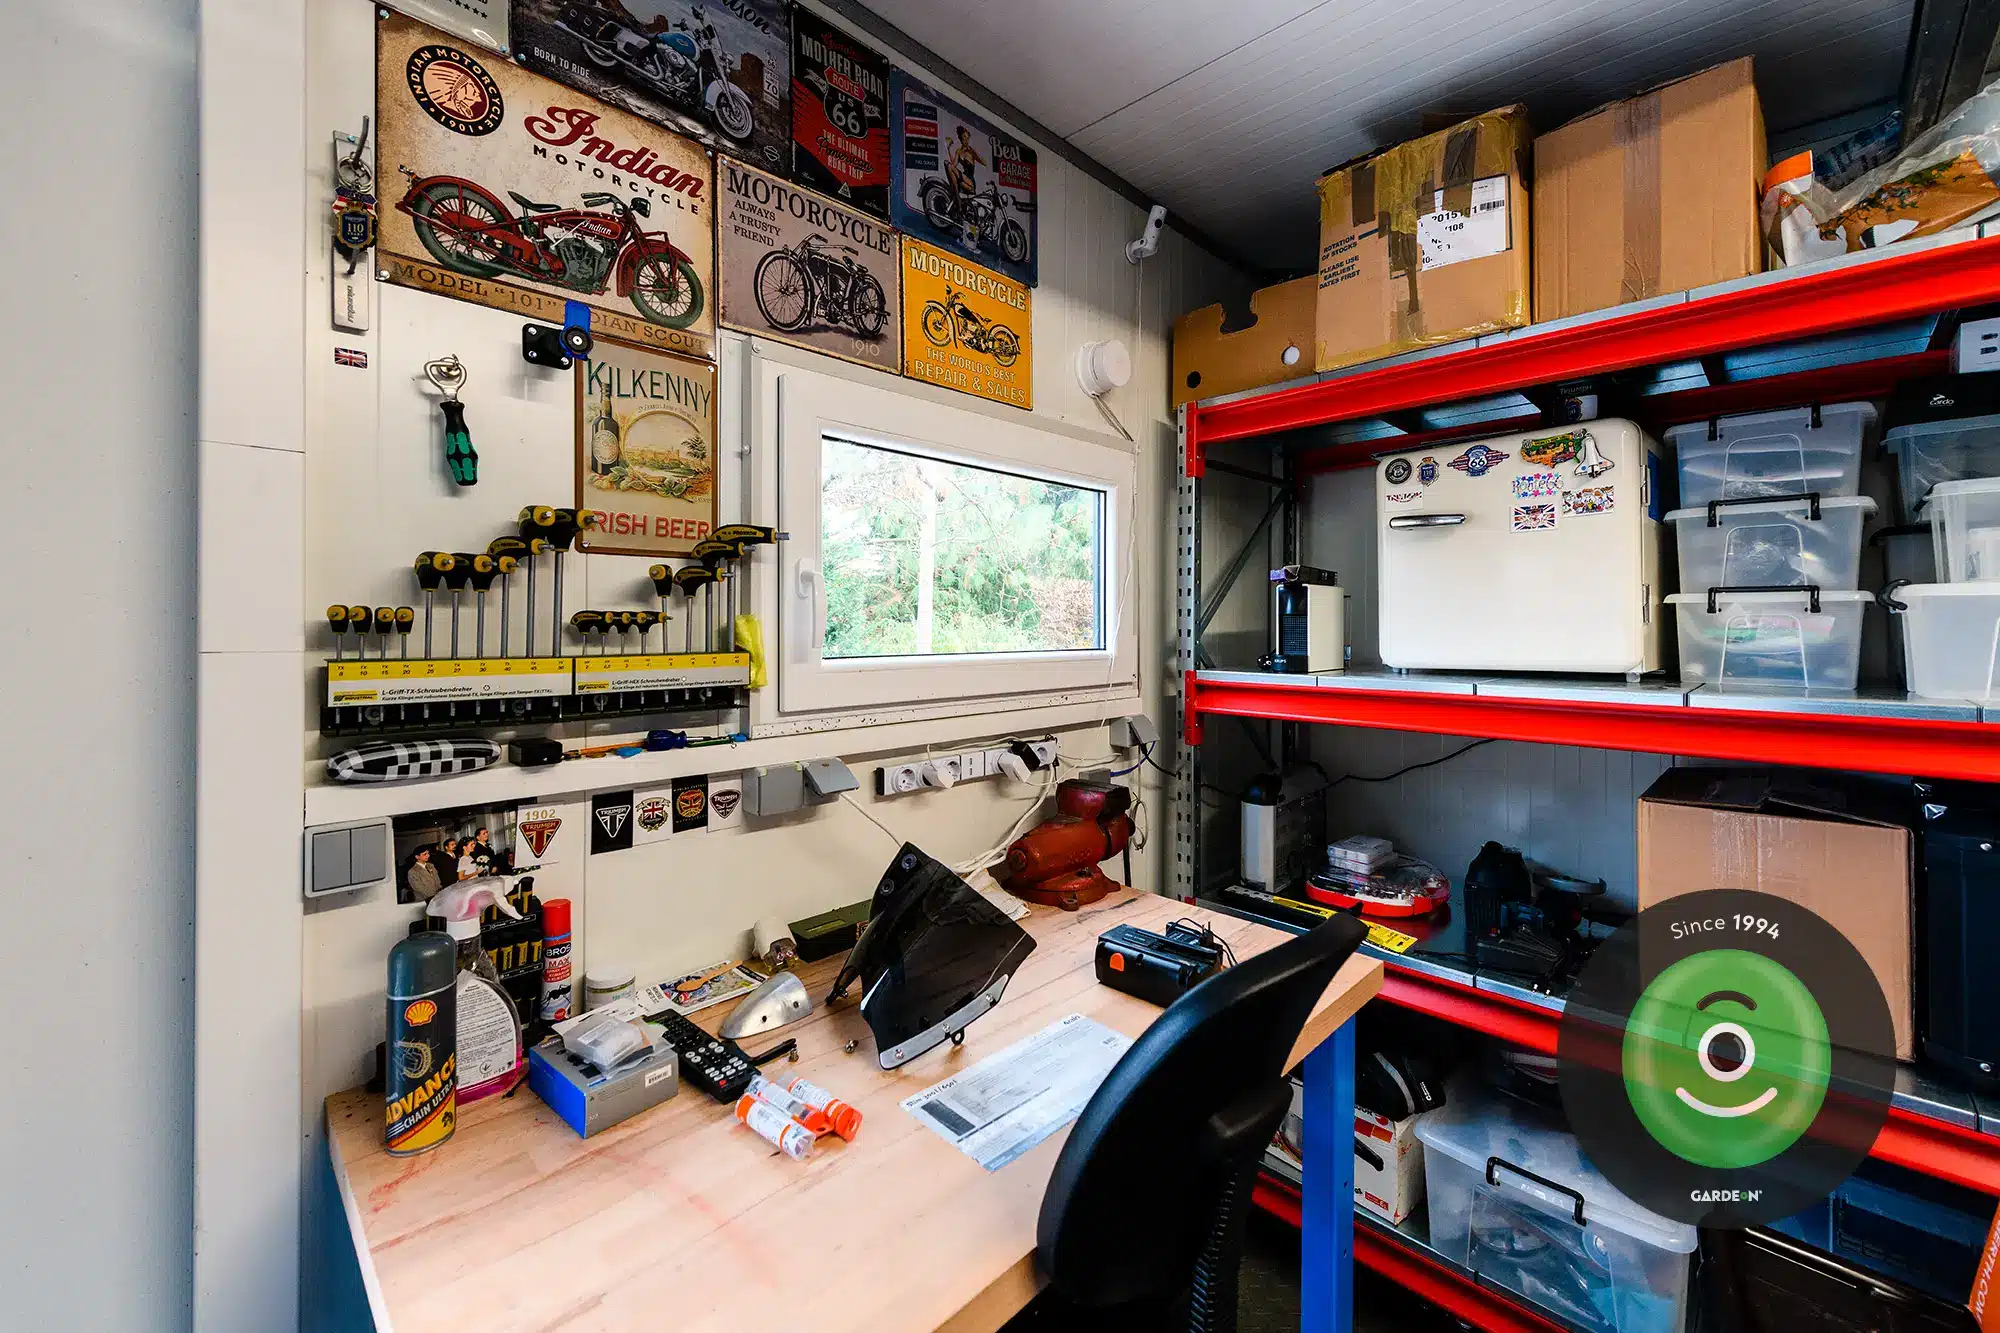 Tipps für den perfekten Hobbyraum in der Garage - GARDEON